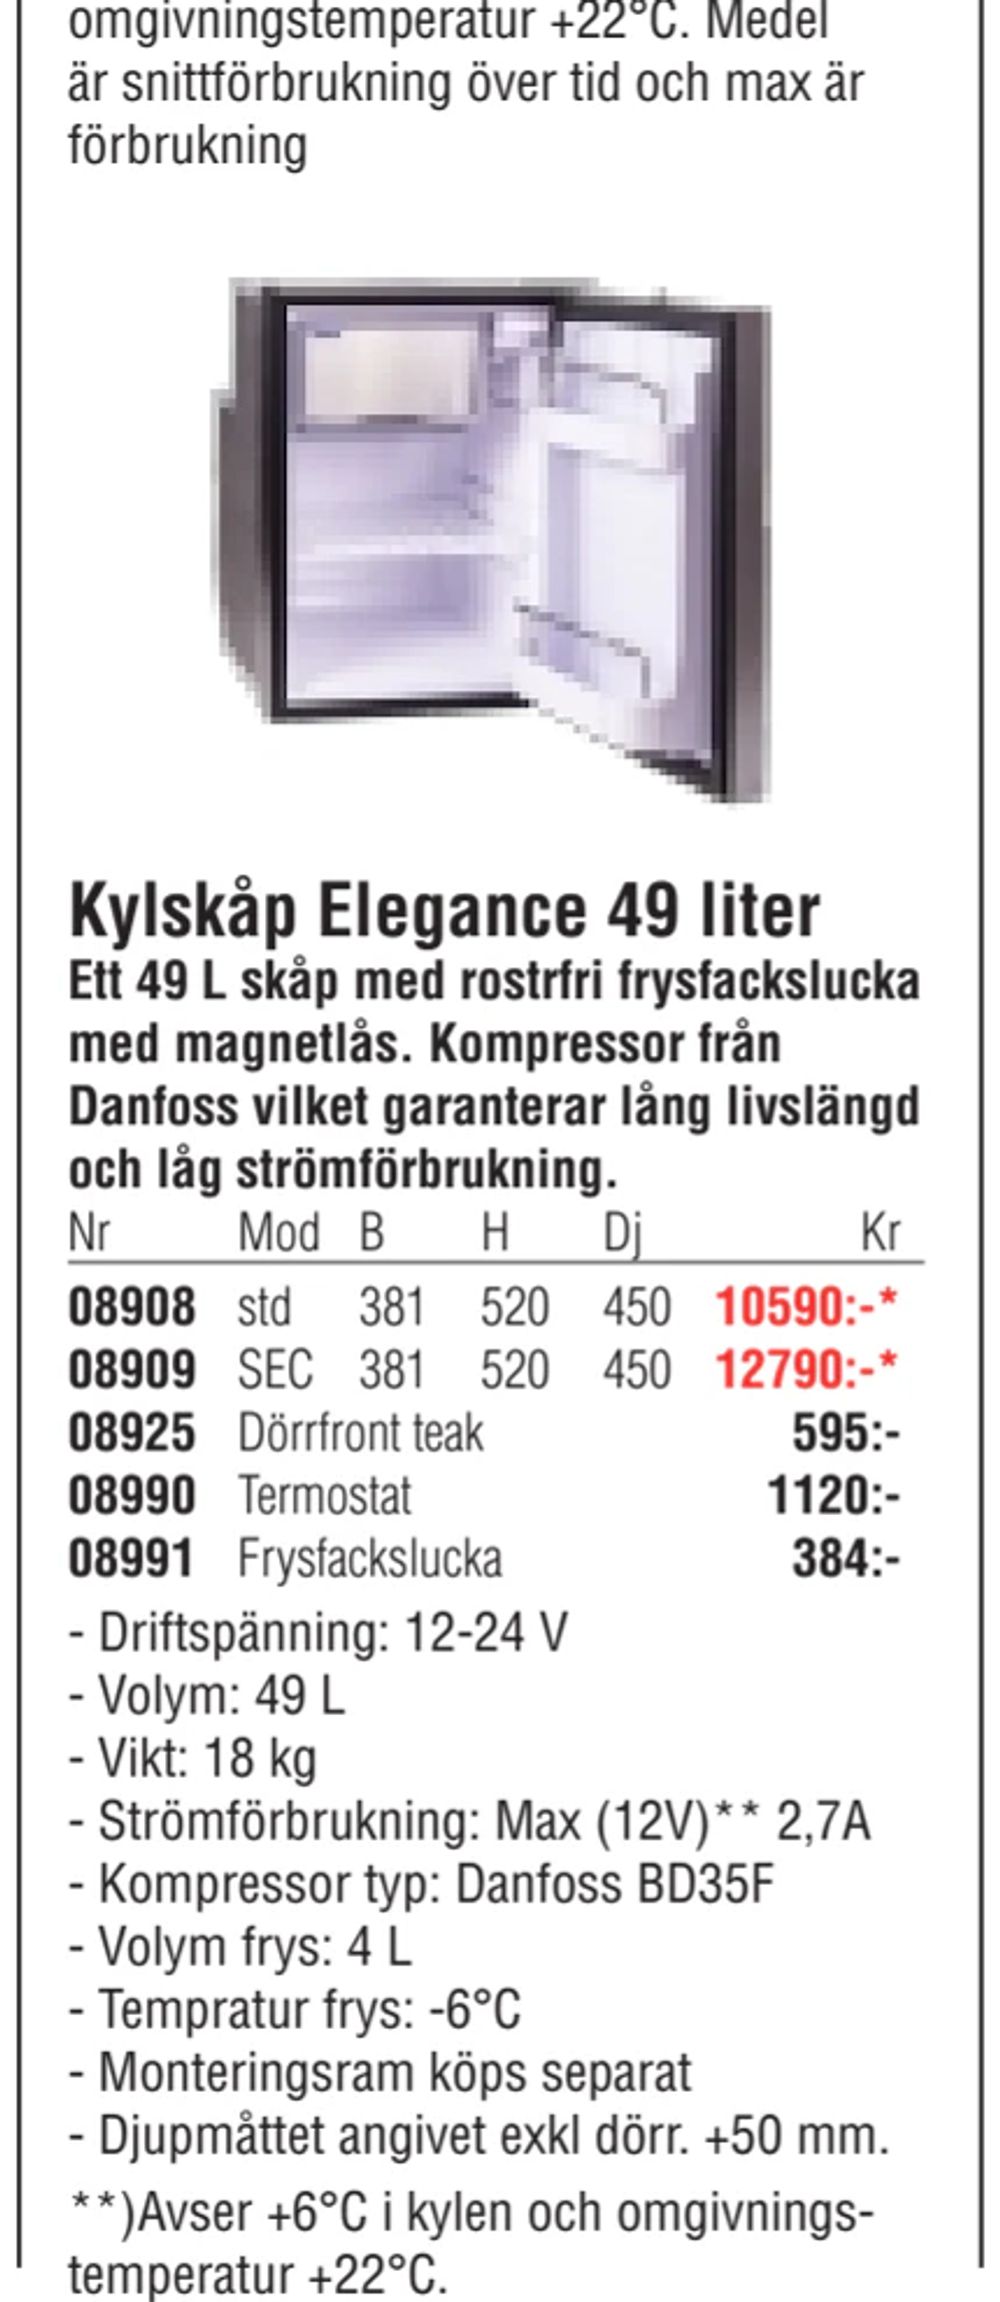 Erbjudanden på Kylskåp Elegance 49 liter från Erlandsons Brygga för 384 kr